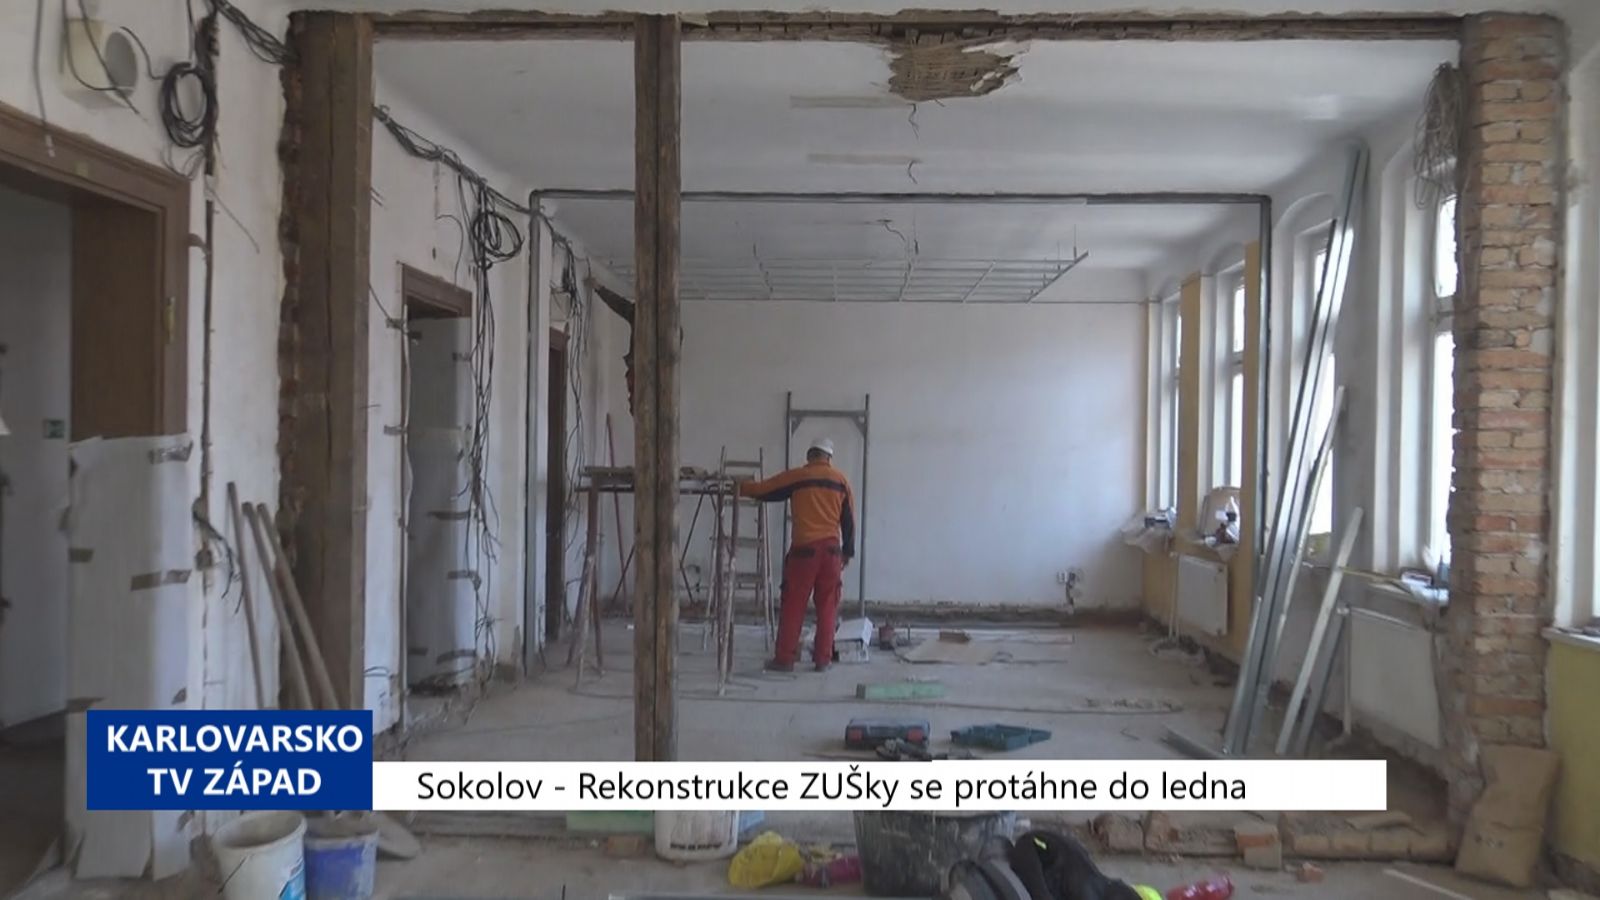 Sokolov: Rekonstrukce ZUŠky se protáhne do ledna (TV Západ)